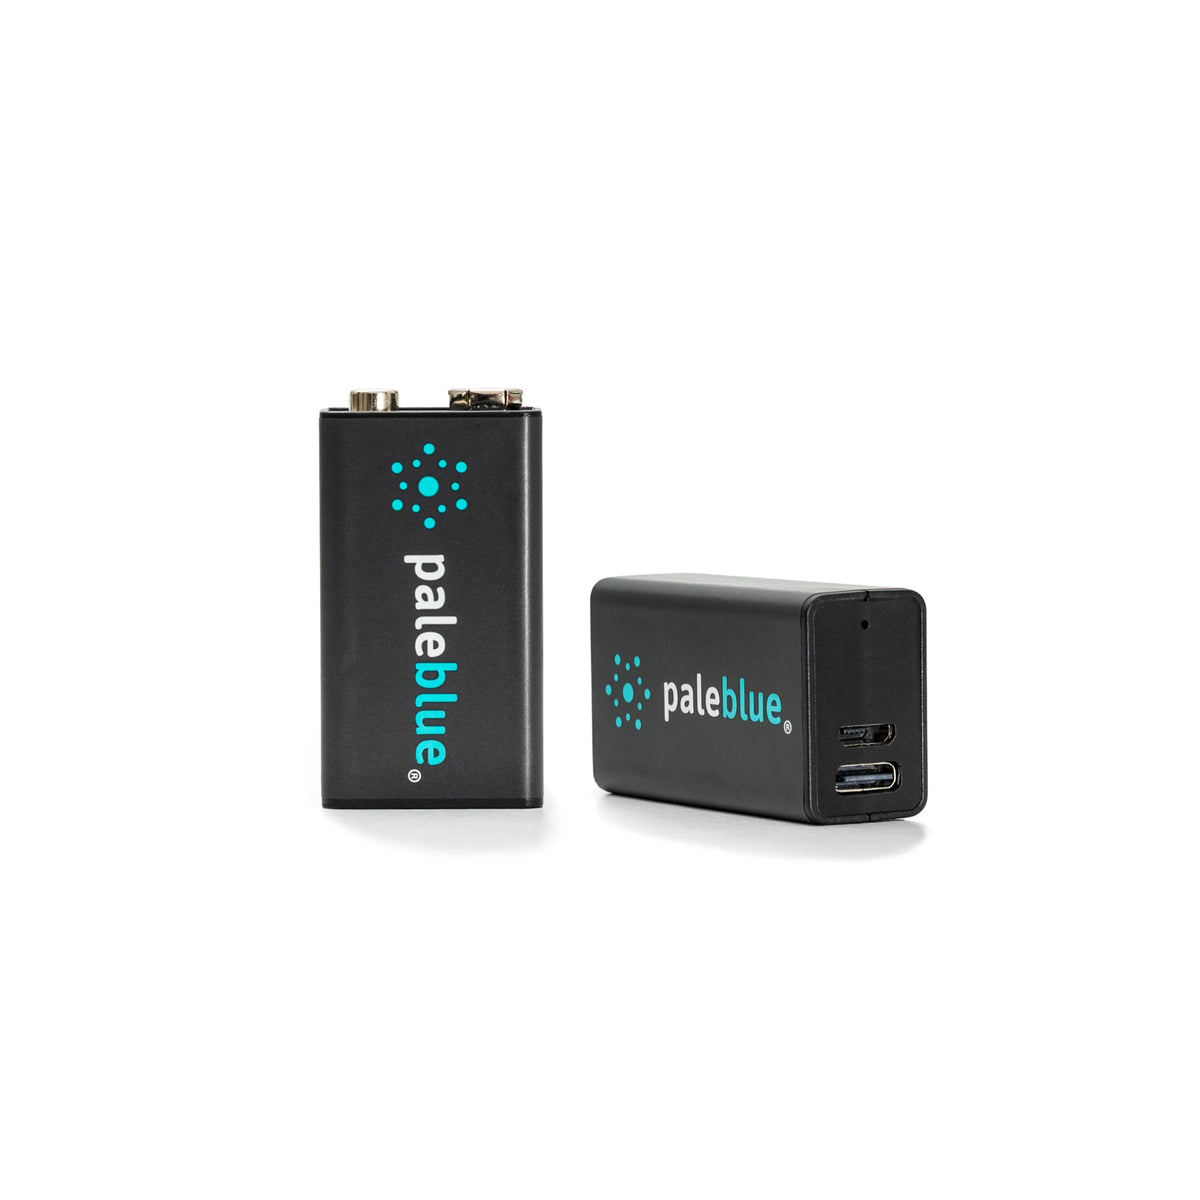 Pile 9V rechargeable par USB, 9 volts, Pile carre, 6LR61, 6F22 rechargeable  - Pale Blue